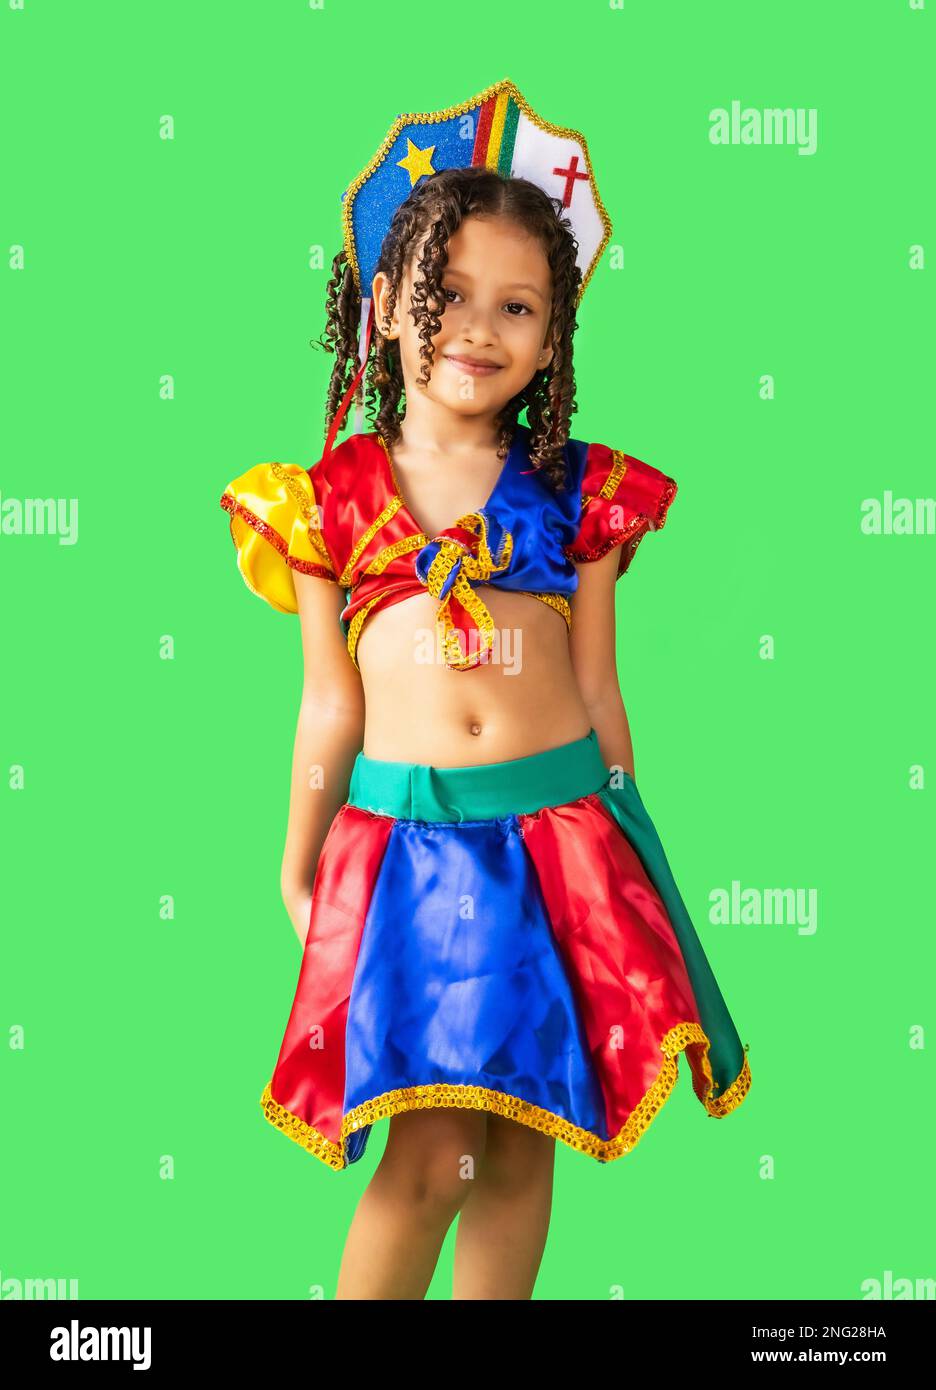 Fille brésilienne, vêtue d'une tenue de carnaval, dansant avec un parapluie frevo. Petite fille, brésilienne, avec des vêtements de frevo, costume de carnaval, frevo dansant Banque D'Images